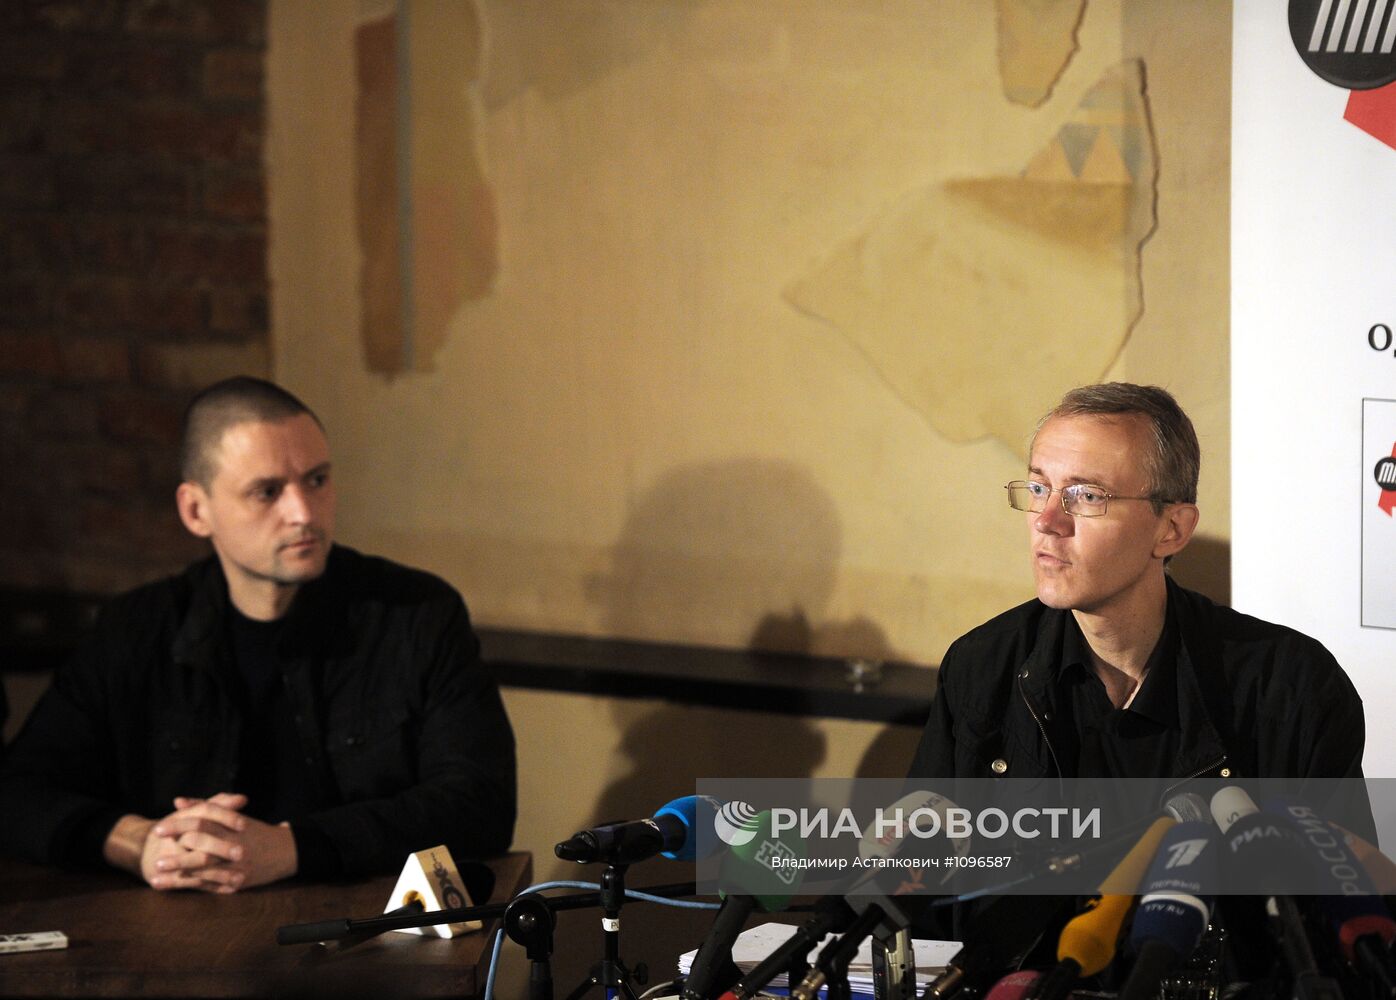 Пресс-конференция Олега Шеина в кафе "Пироги"